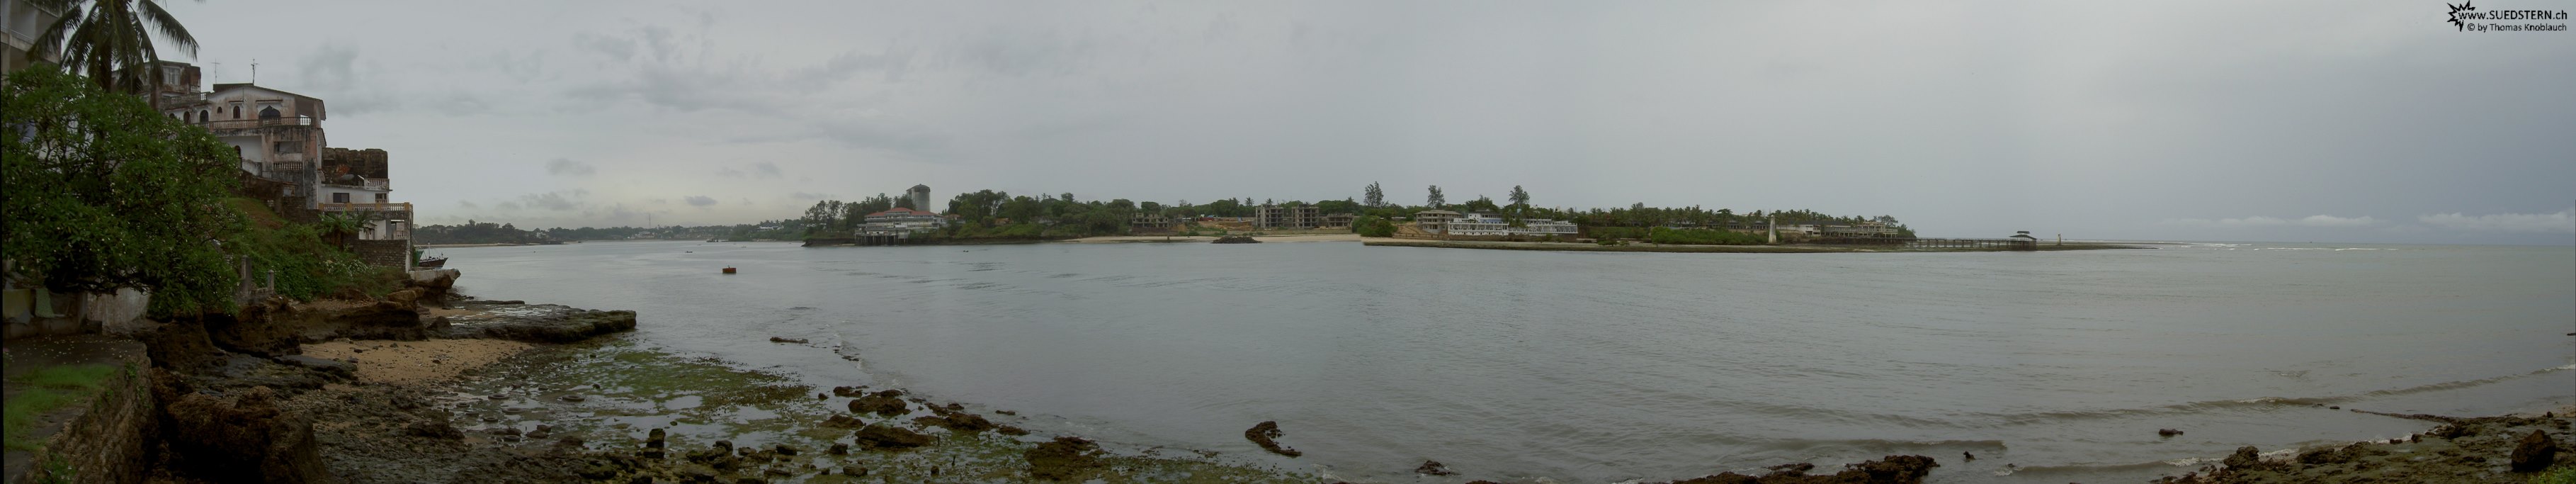 2007-04-18 - Kenya - Mombassa River Panorama